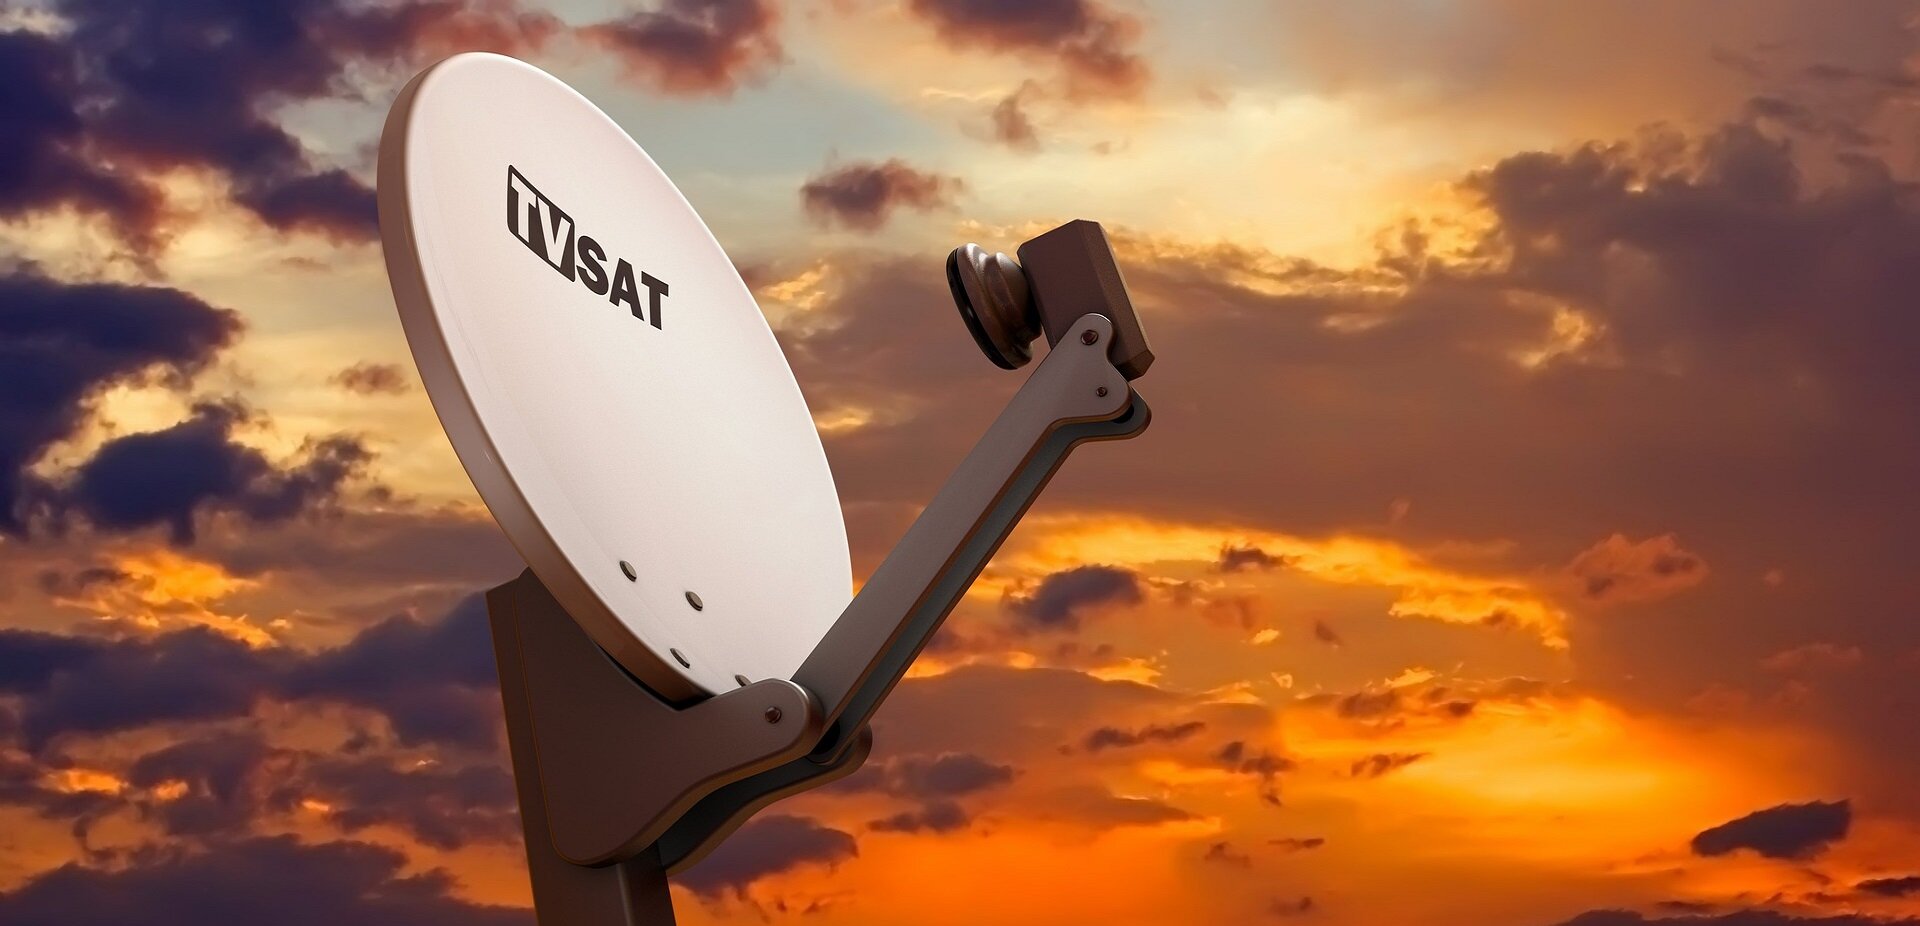 TV Satellite dish in evening sky